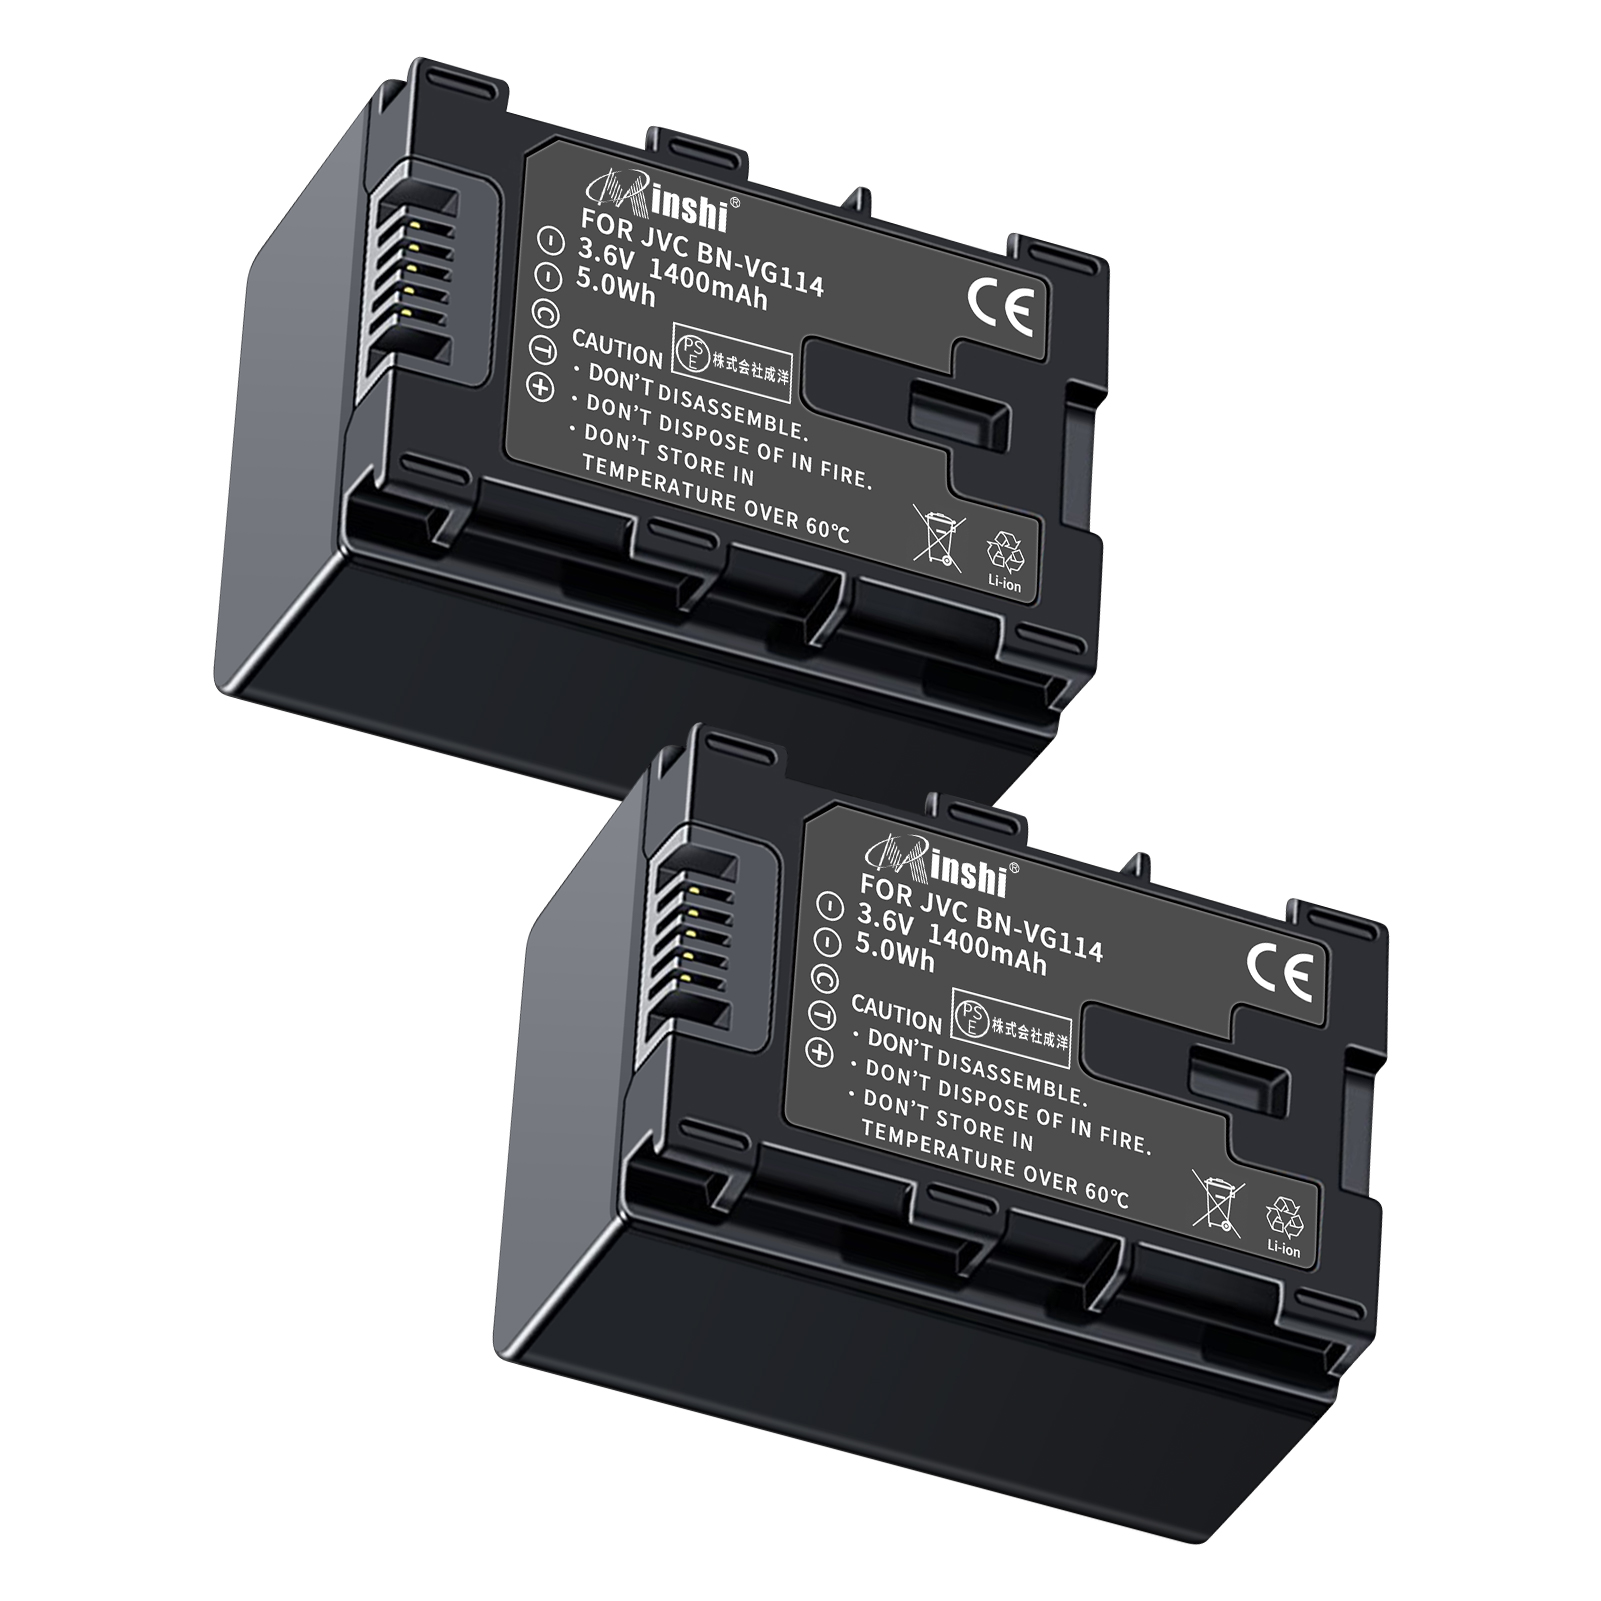 【２個セット】 minshi VICTOR GZ-HM670 BN-VG121 対応 互換バッテリー 1400mAh 高品質交換用バッテリー